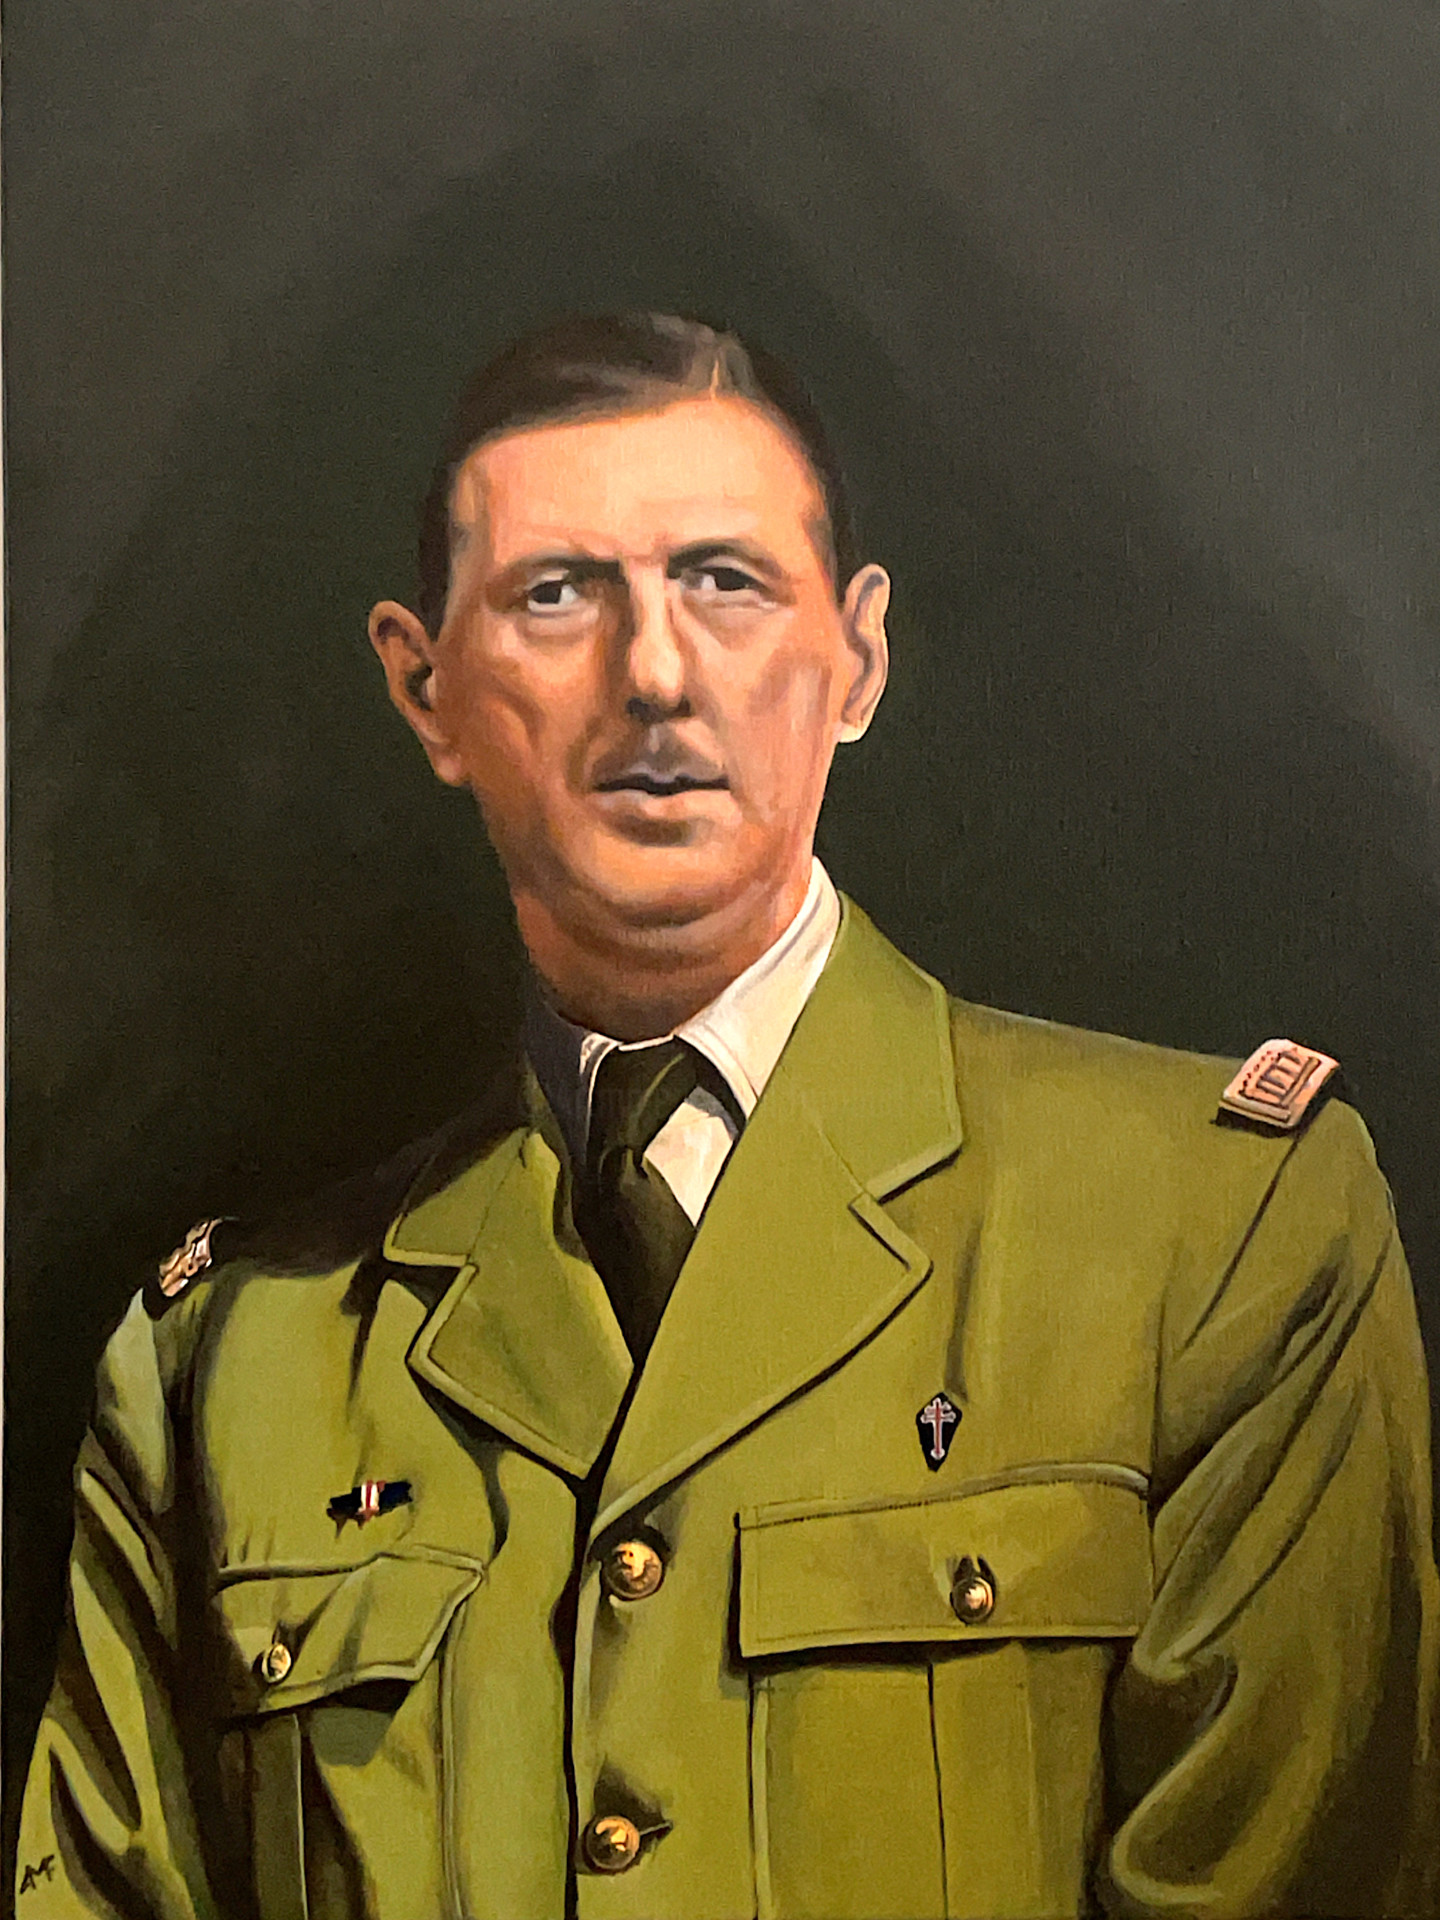 Charles De Gaulle, Painting by Arnaud Feuga